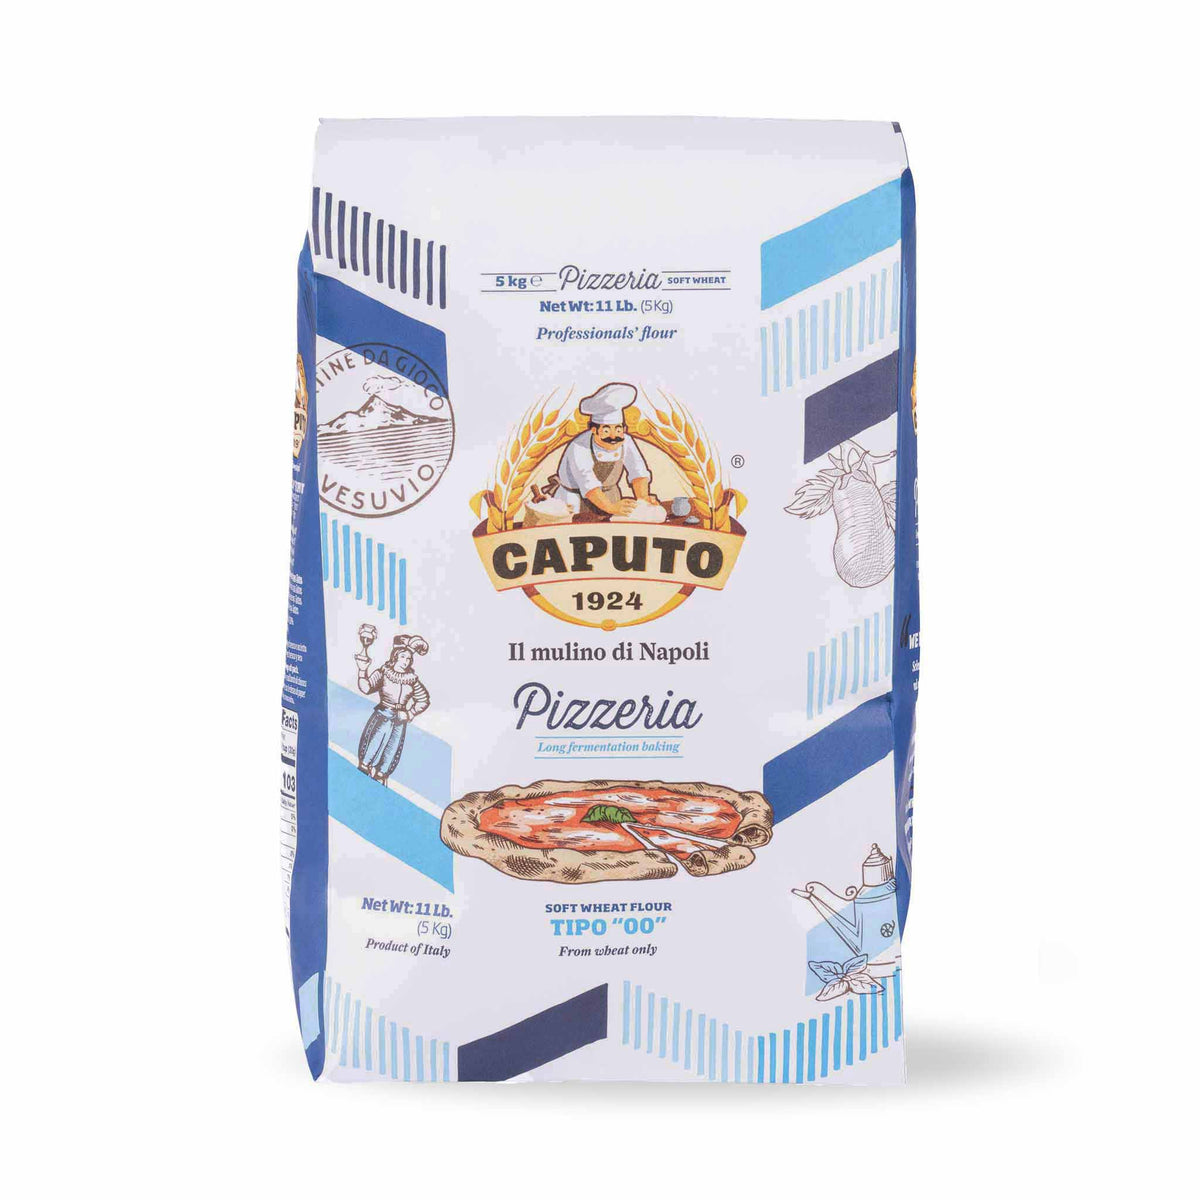 Caputo USA launches www.caputoflour.com - PMQ Pizza Magazine